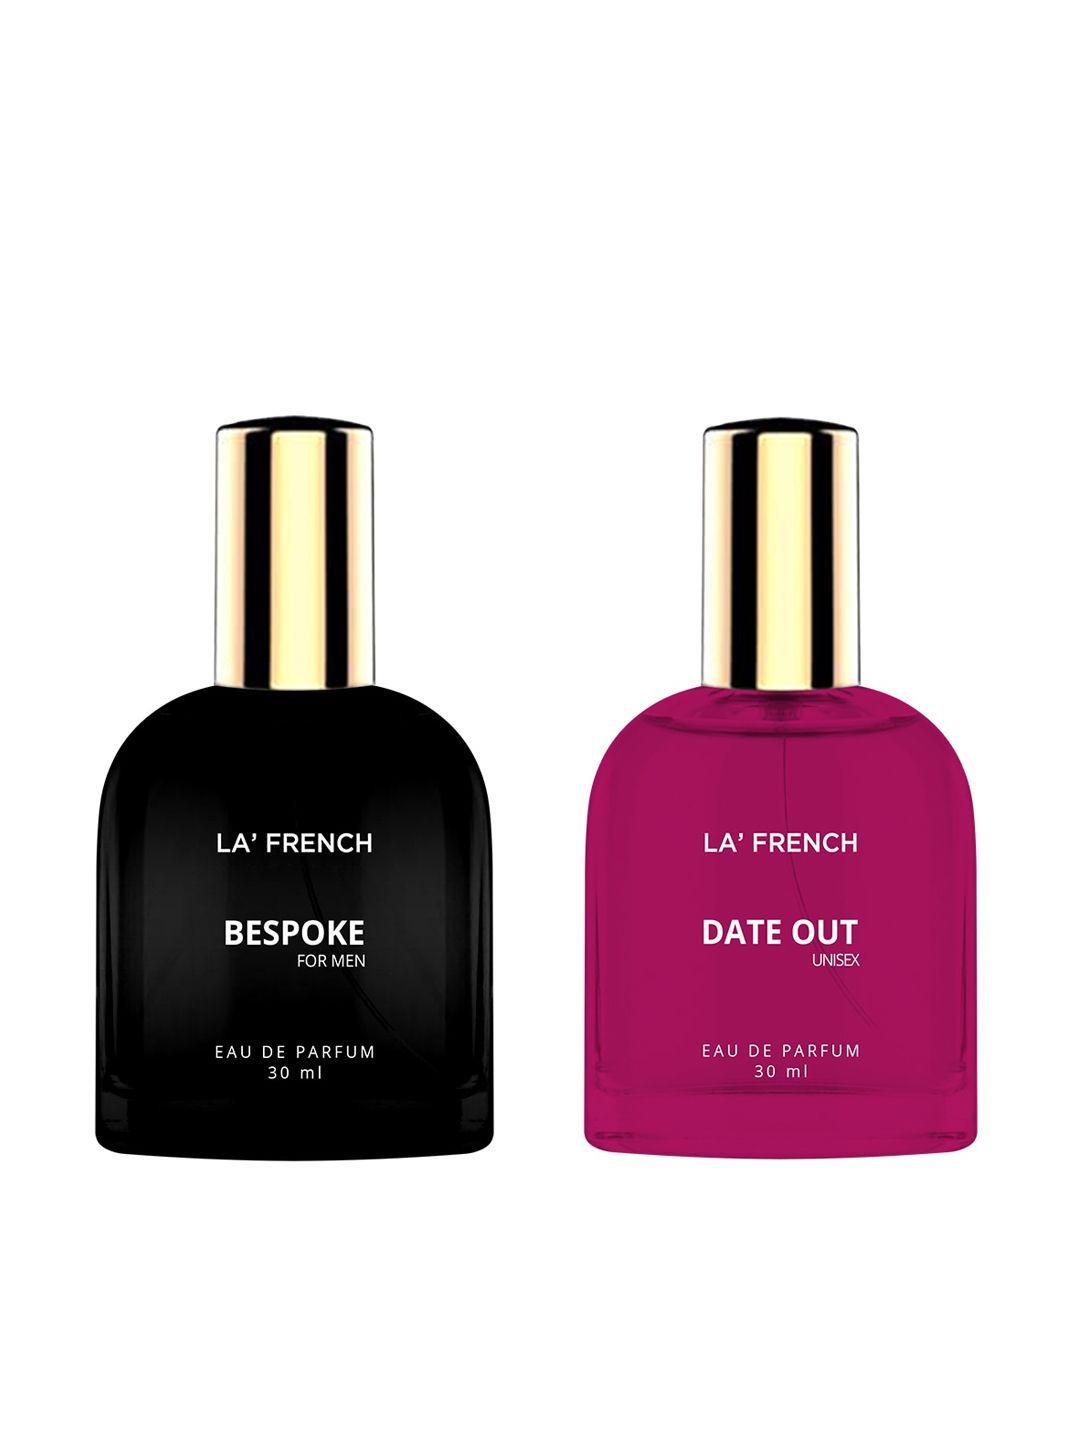 la french set of 2 bespoke & date out eau de parfum - 30ml each